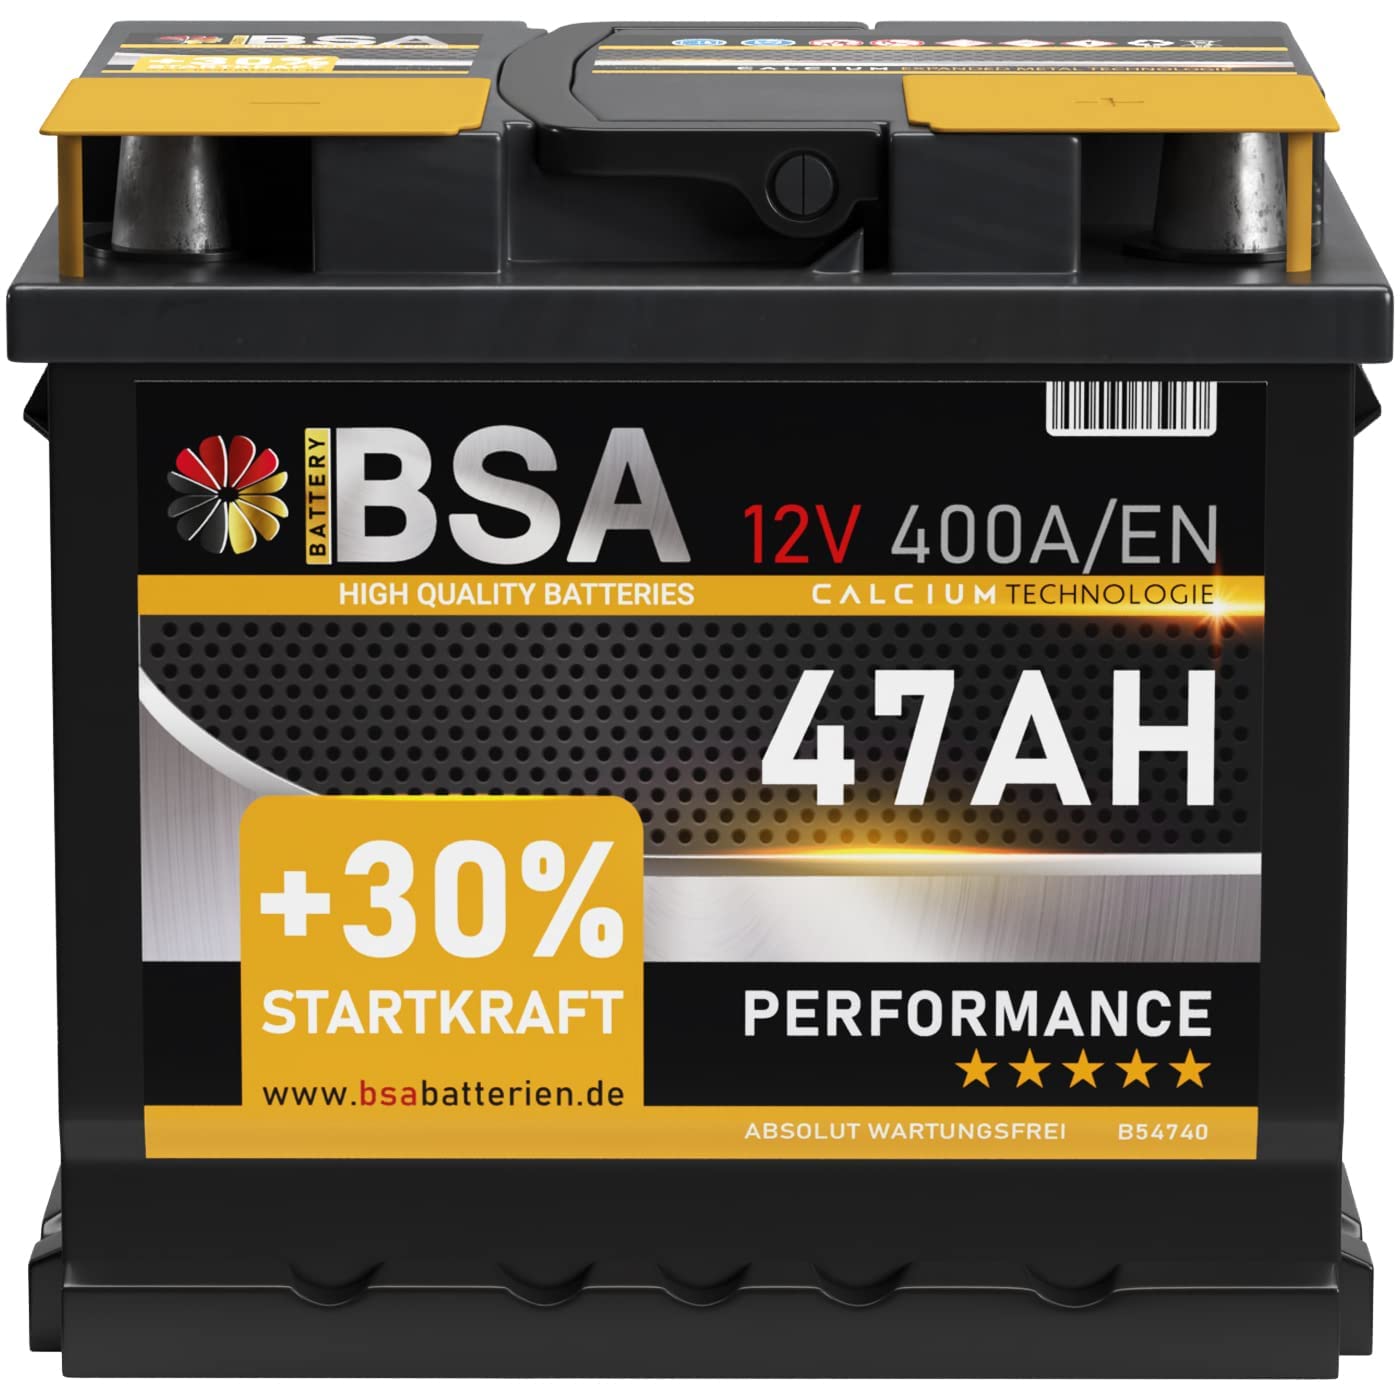 BSA Autobatterie 47AH 12V Batterie 400A/EN +30% Startleistung ersetzt 44Ah 45Ah 50Ah 46Ah 40Ah von BSA BATTERY HIGH QUALITY BATTERIES